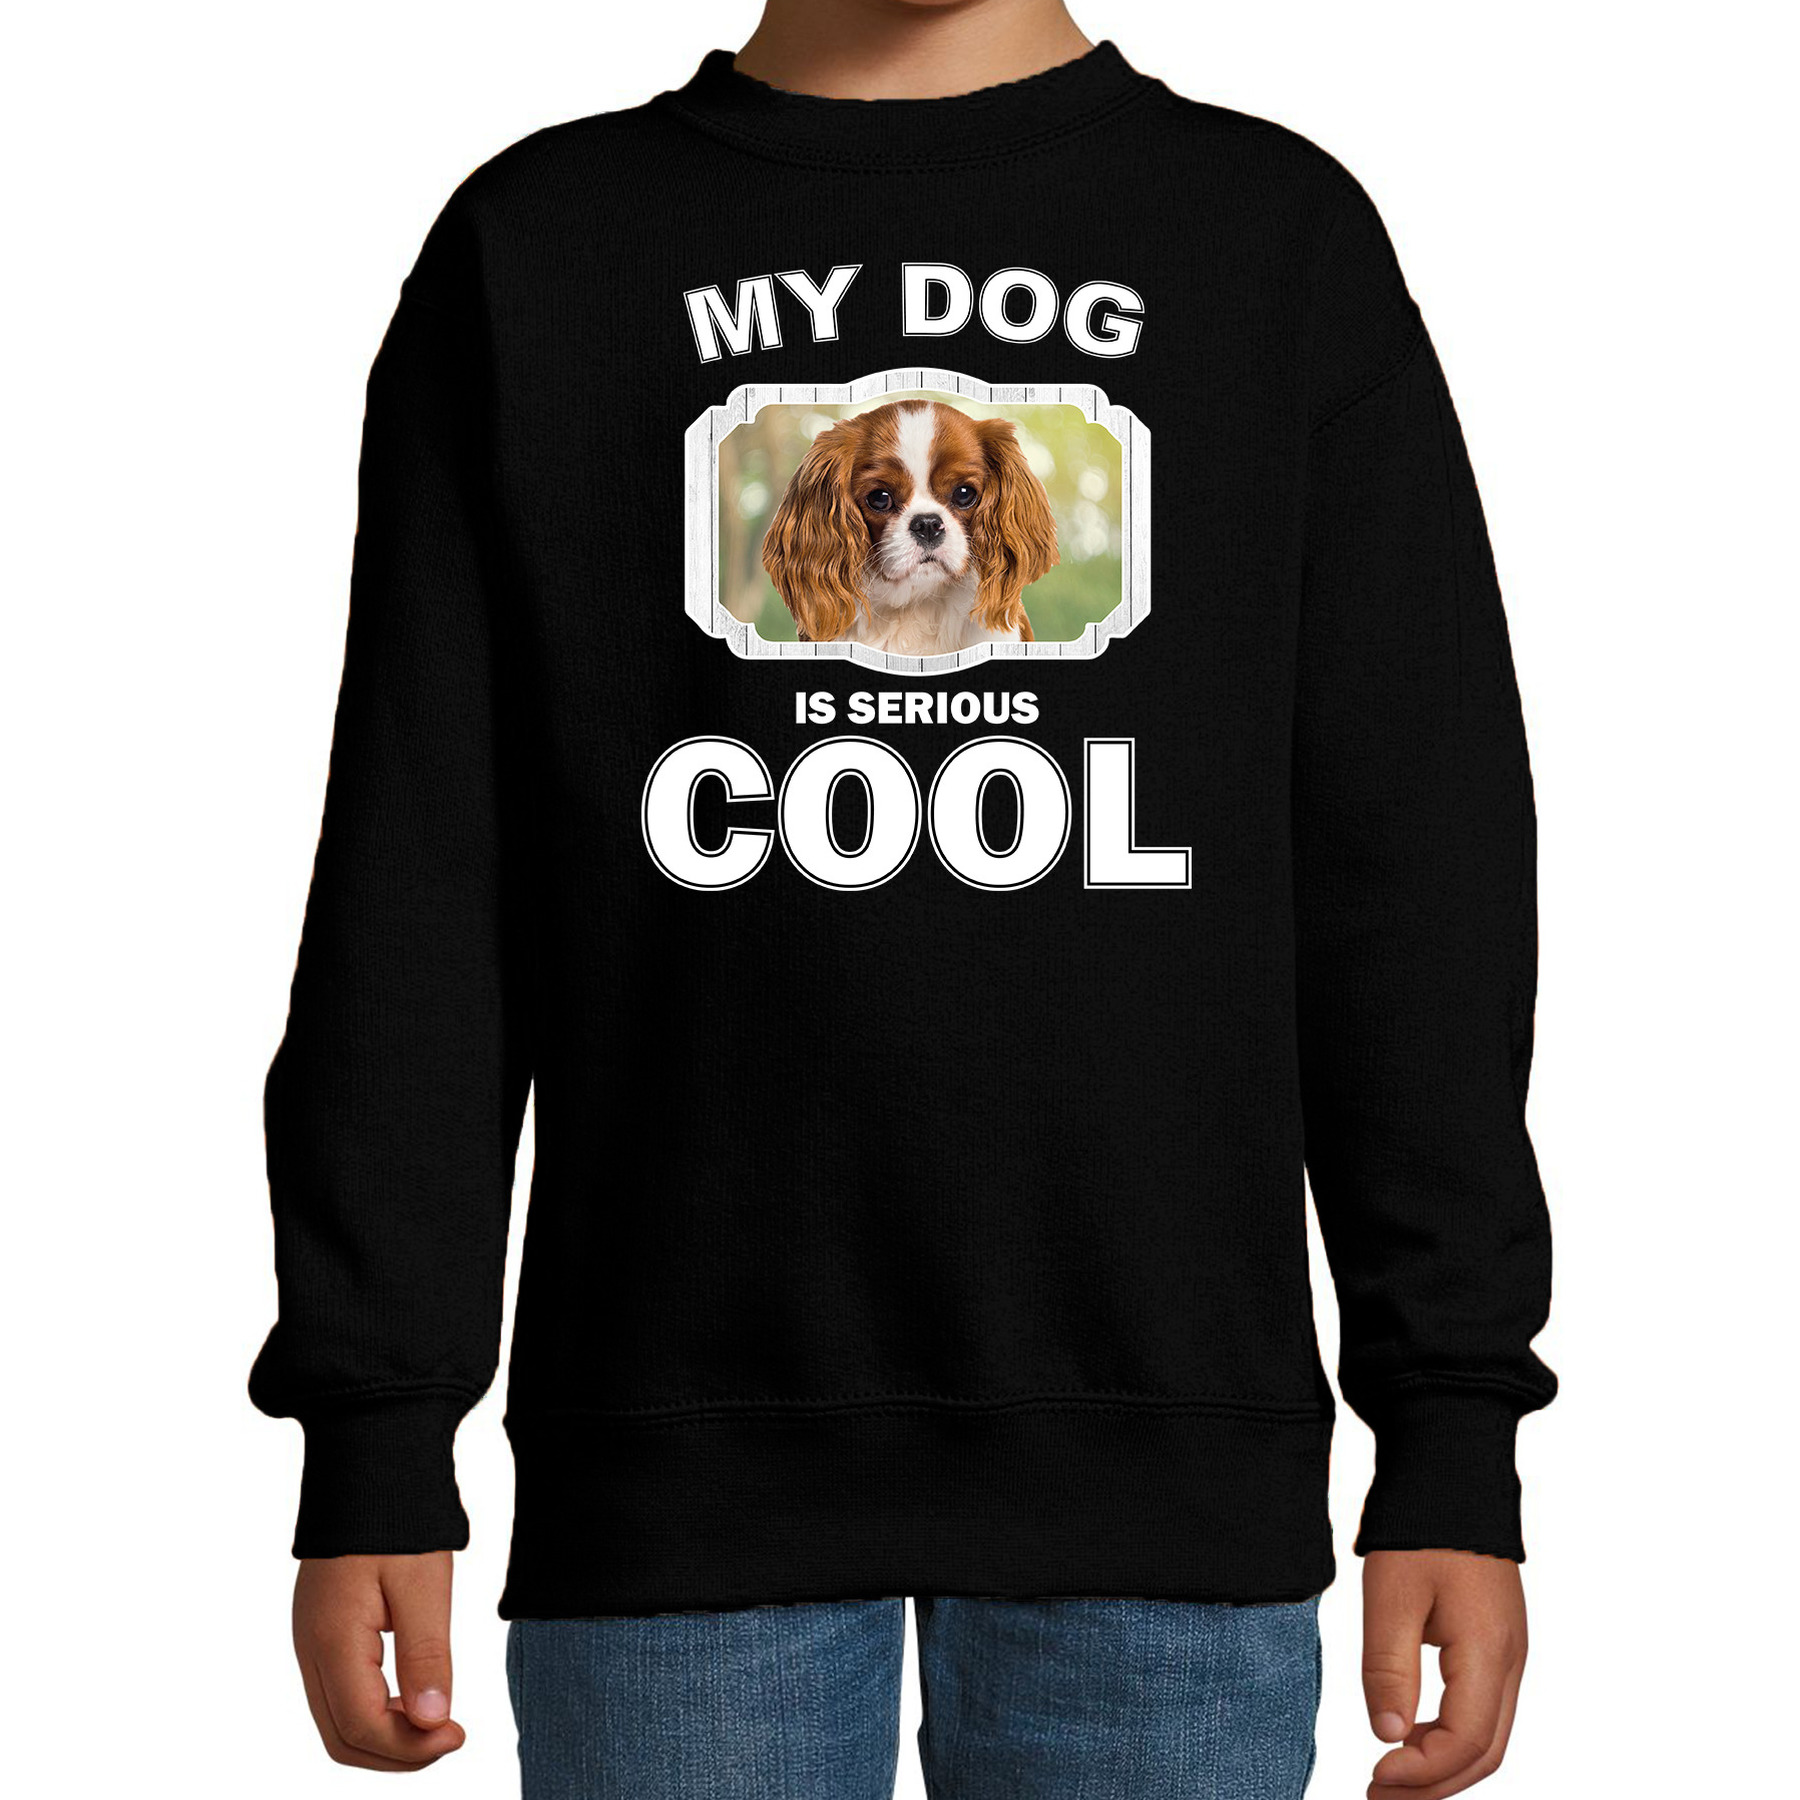 Charles spaniel honden trui-sweater my dog is serious cool zwart voor kinderen